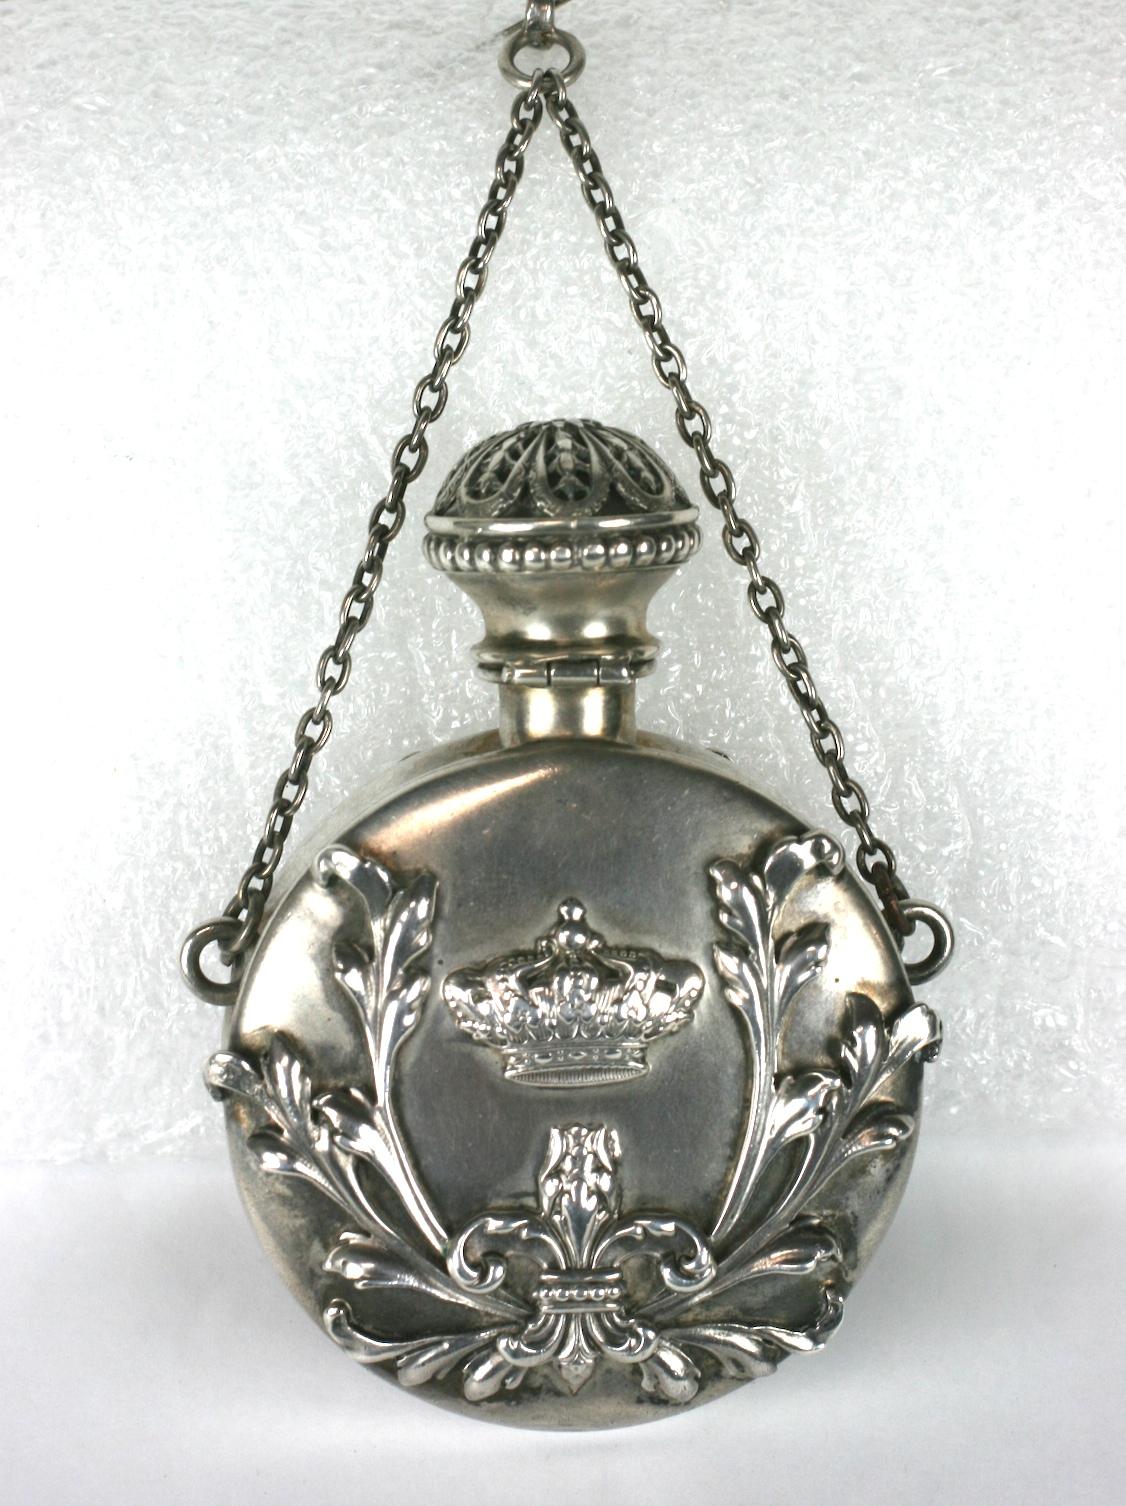 Shiebler sterling Victorian perfume flask pendentif fait à l'origine pour une chatelaine mais peut être utilisé maintenant comme un pendentif. Il a remarquablement conservé son bouchon d'origine en argent qui est magnifiquement ajusté.
Applications